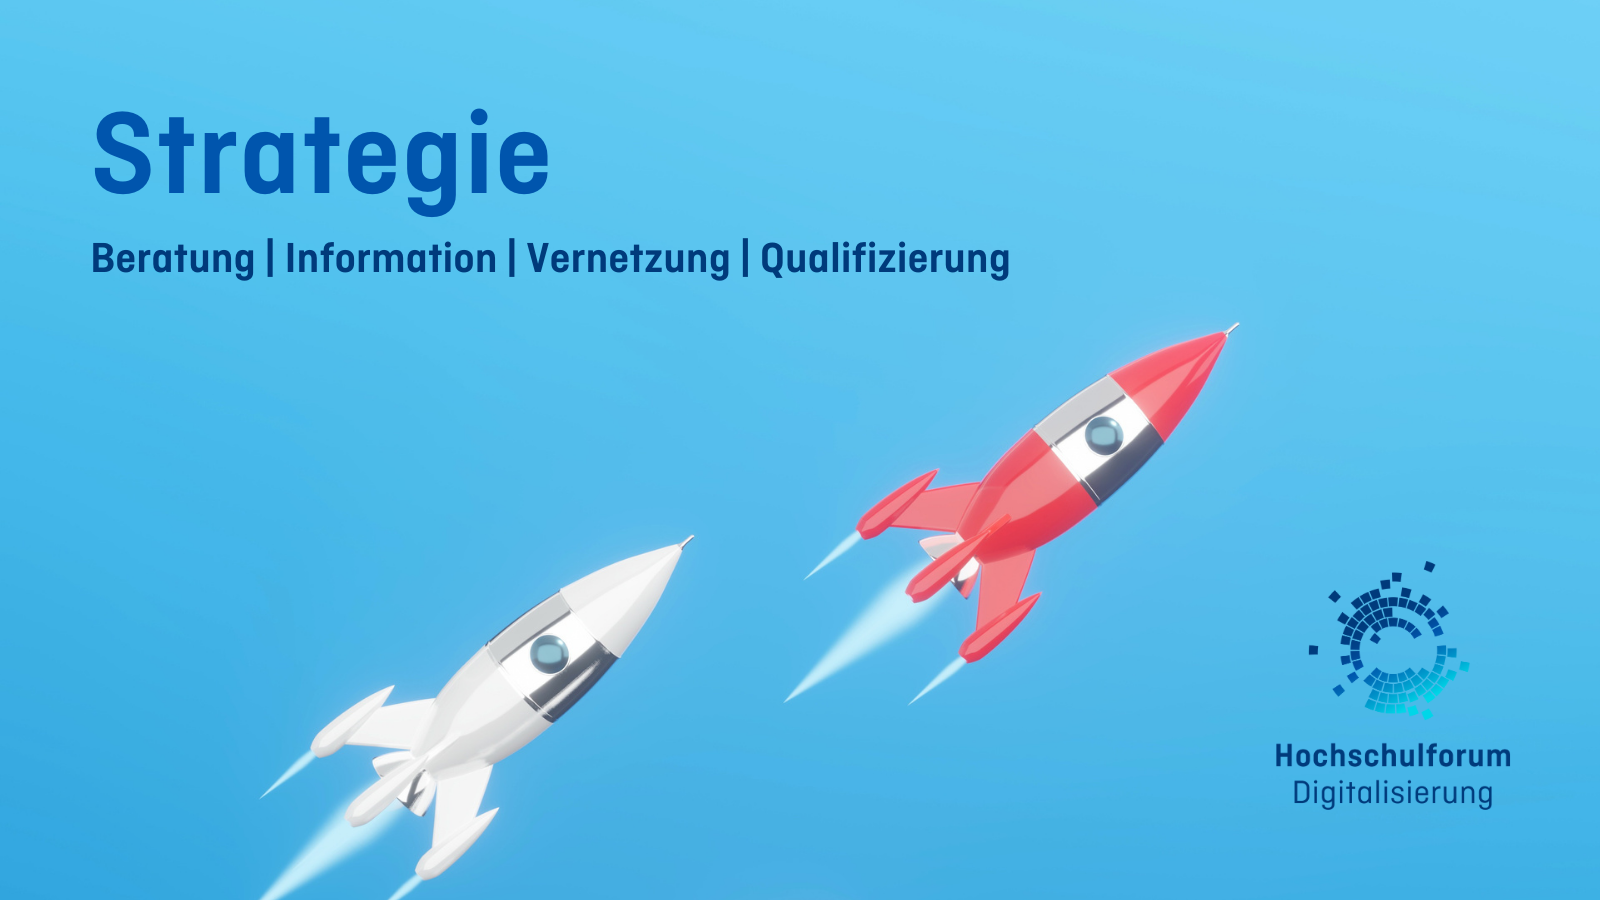 Titelbild der Übersicht Strategie: Beratung, Informieren, Vernetzung, Qualifizierung. Auf blauem Hintergrund fliegen eine weiße und eine rote Rakte nach oben. Logo rechts unten: Hochschulforum Digitalisierung.